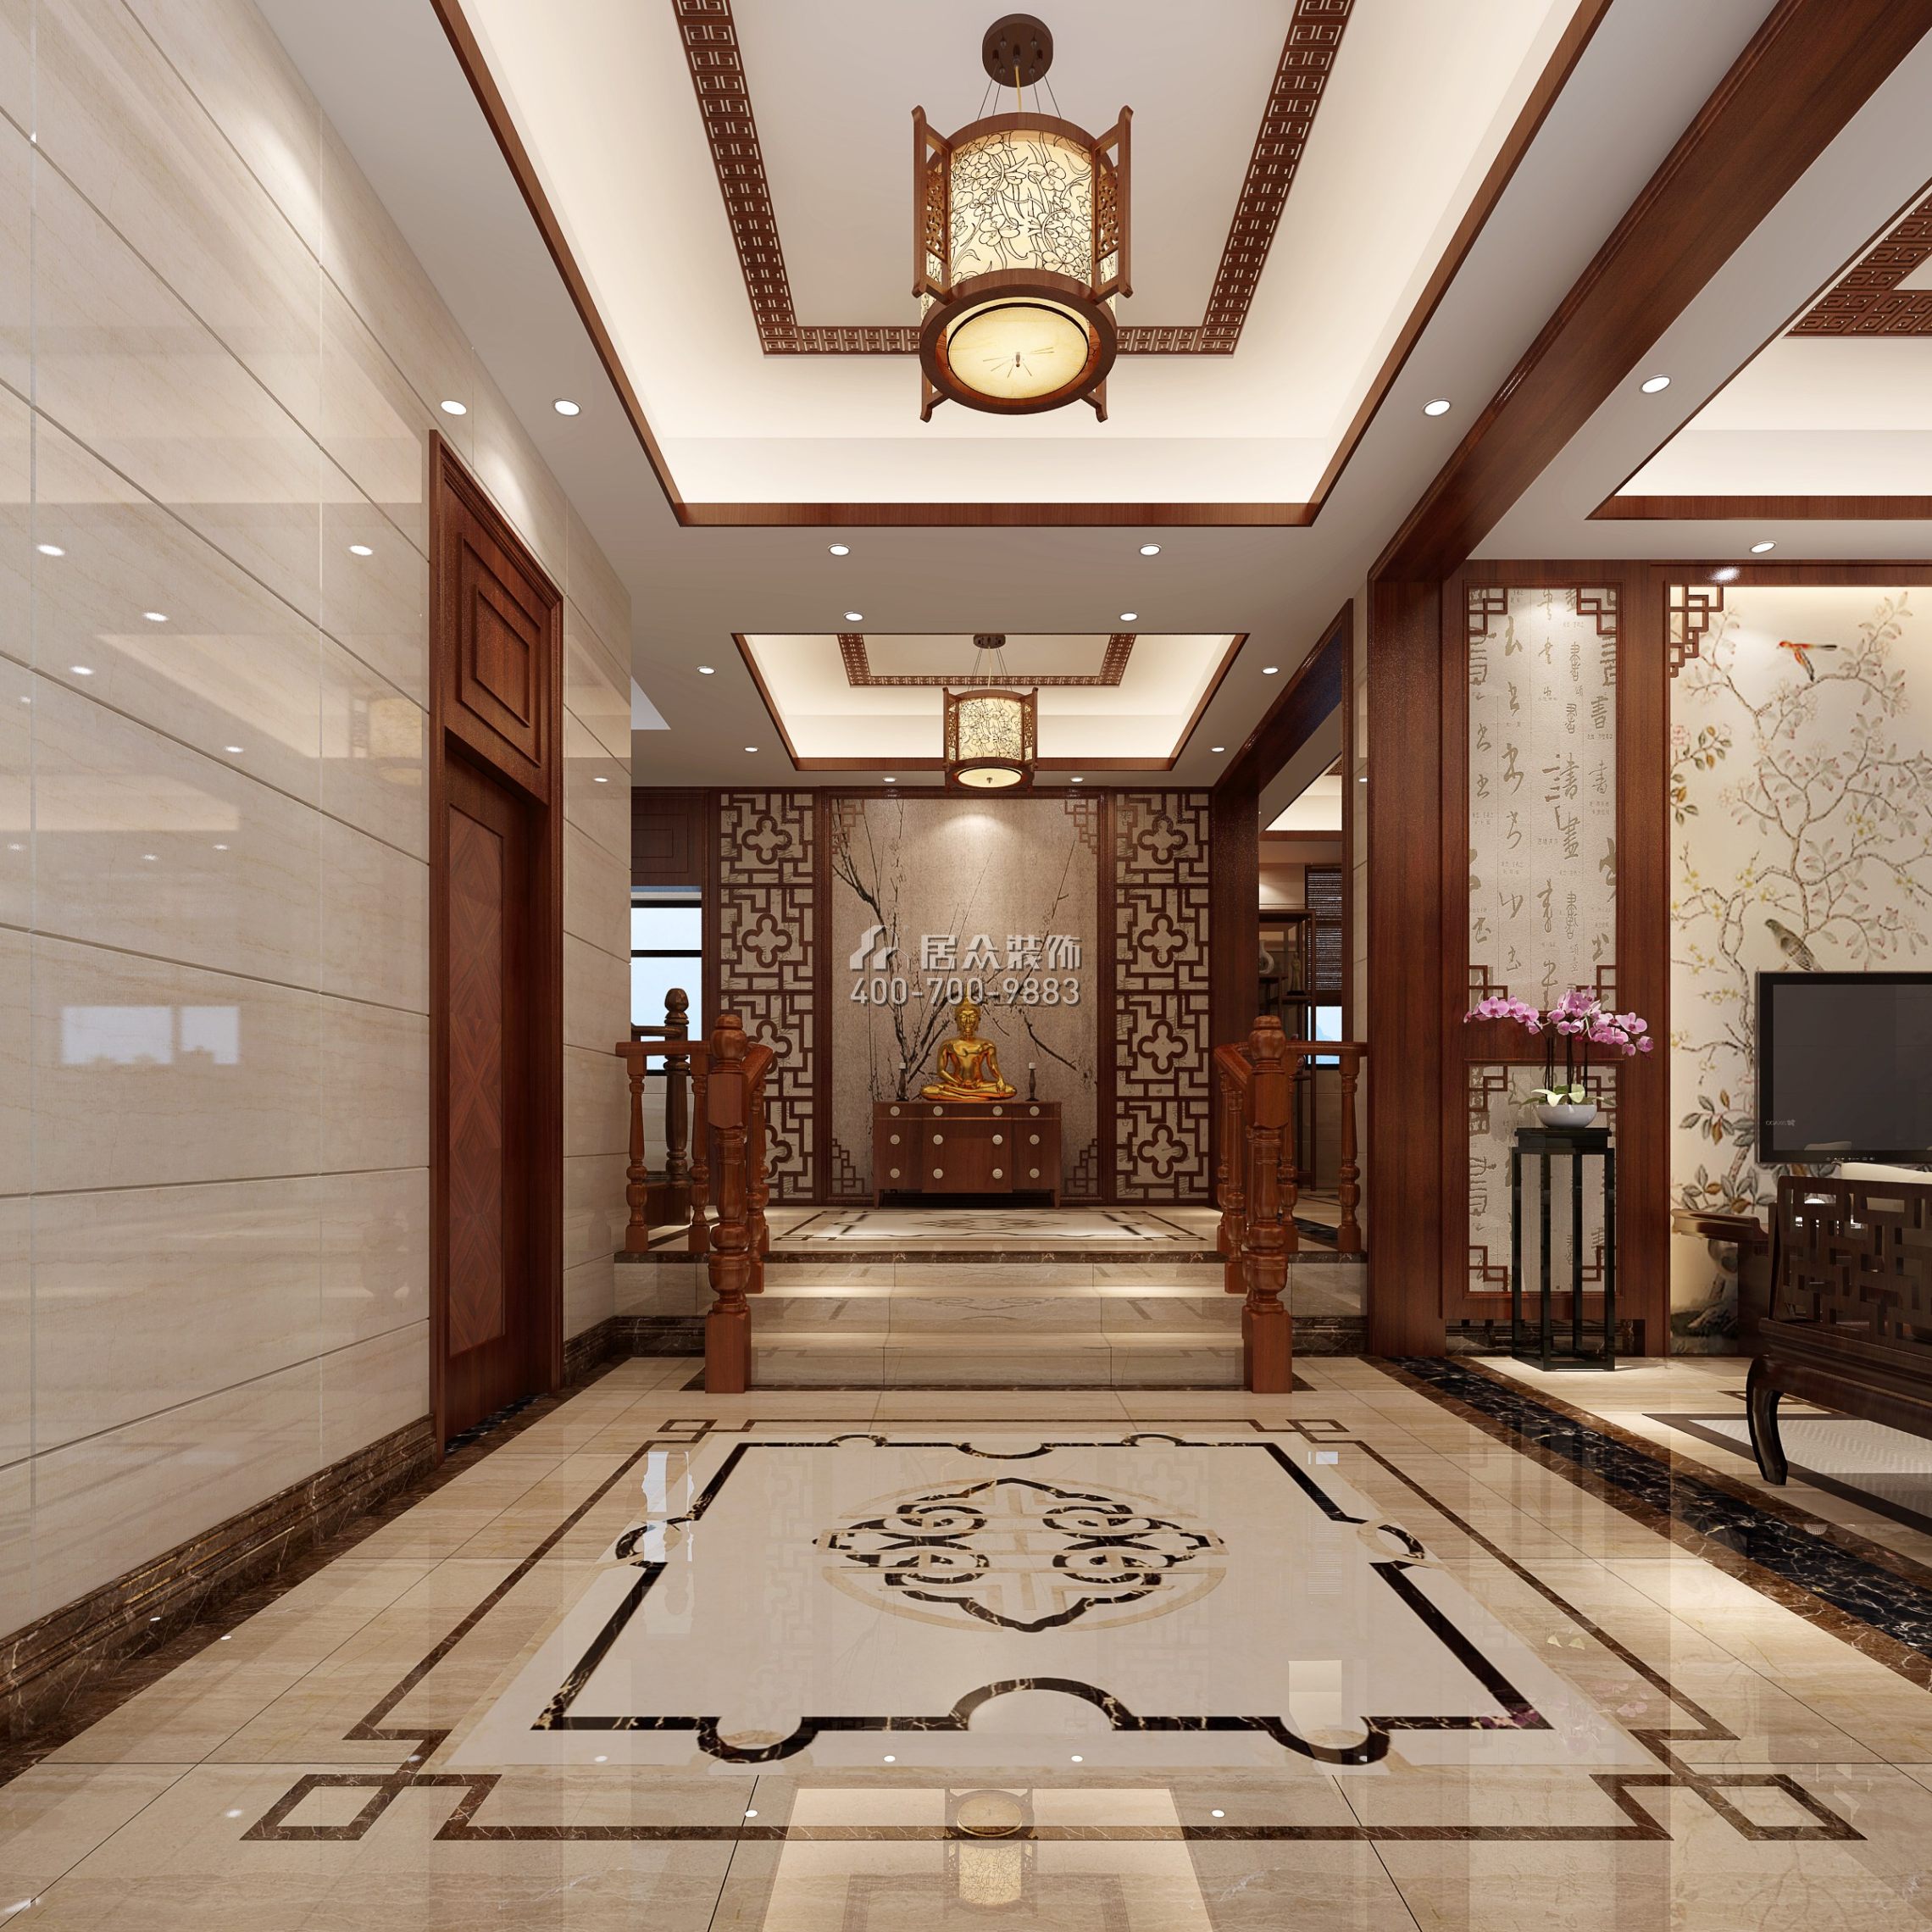 秋长白石自建房340平方米中式风格复式户型客厅装修效果图